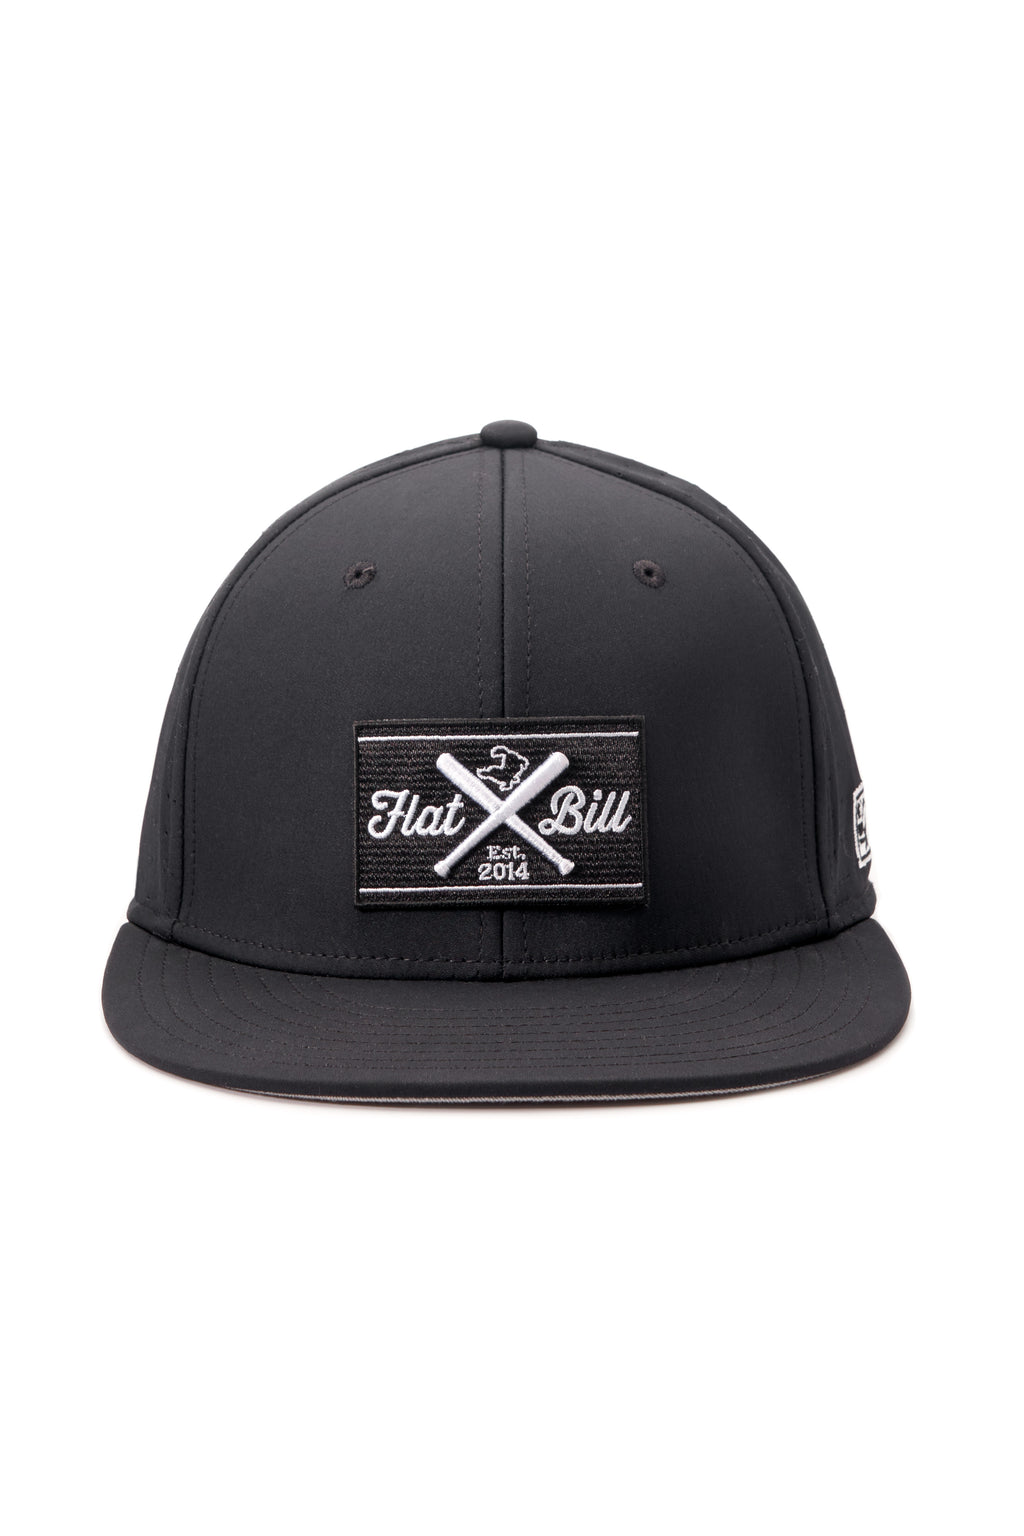 Flatbill Classic Charcoal Flex Fit Baseball Cap Flatbill –